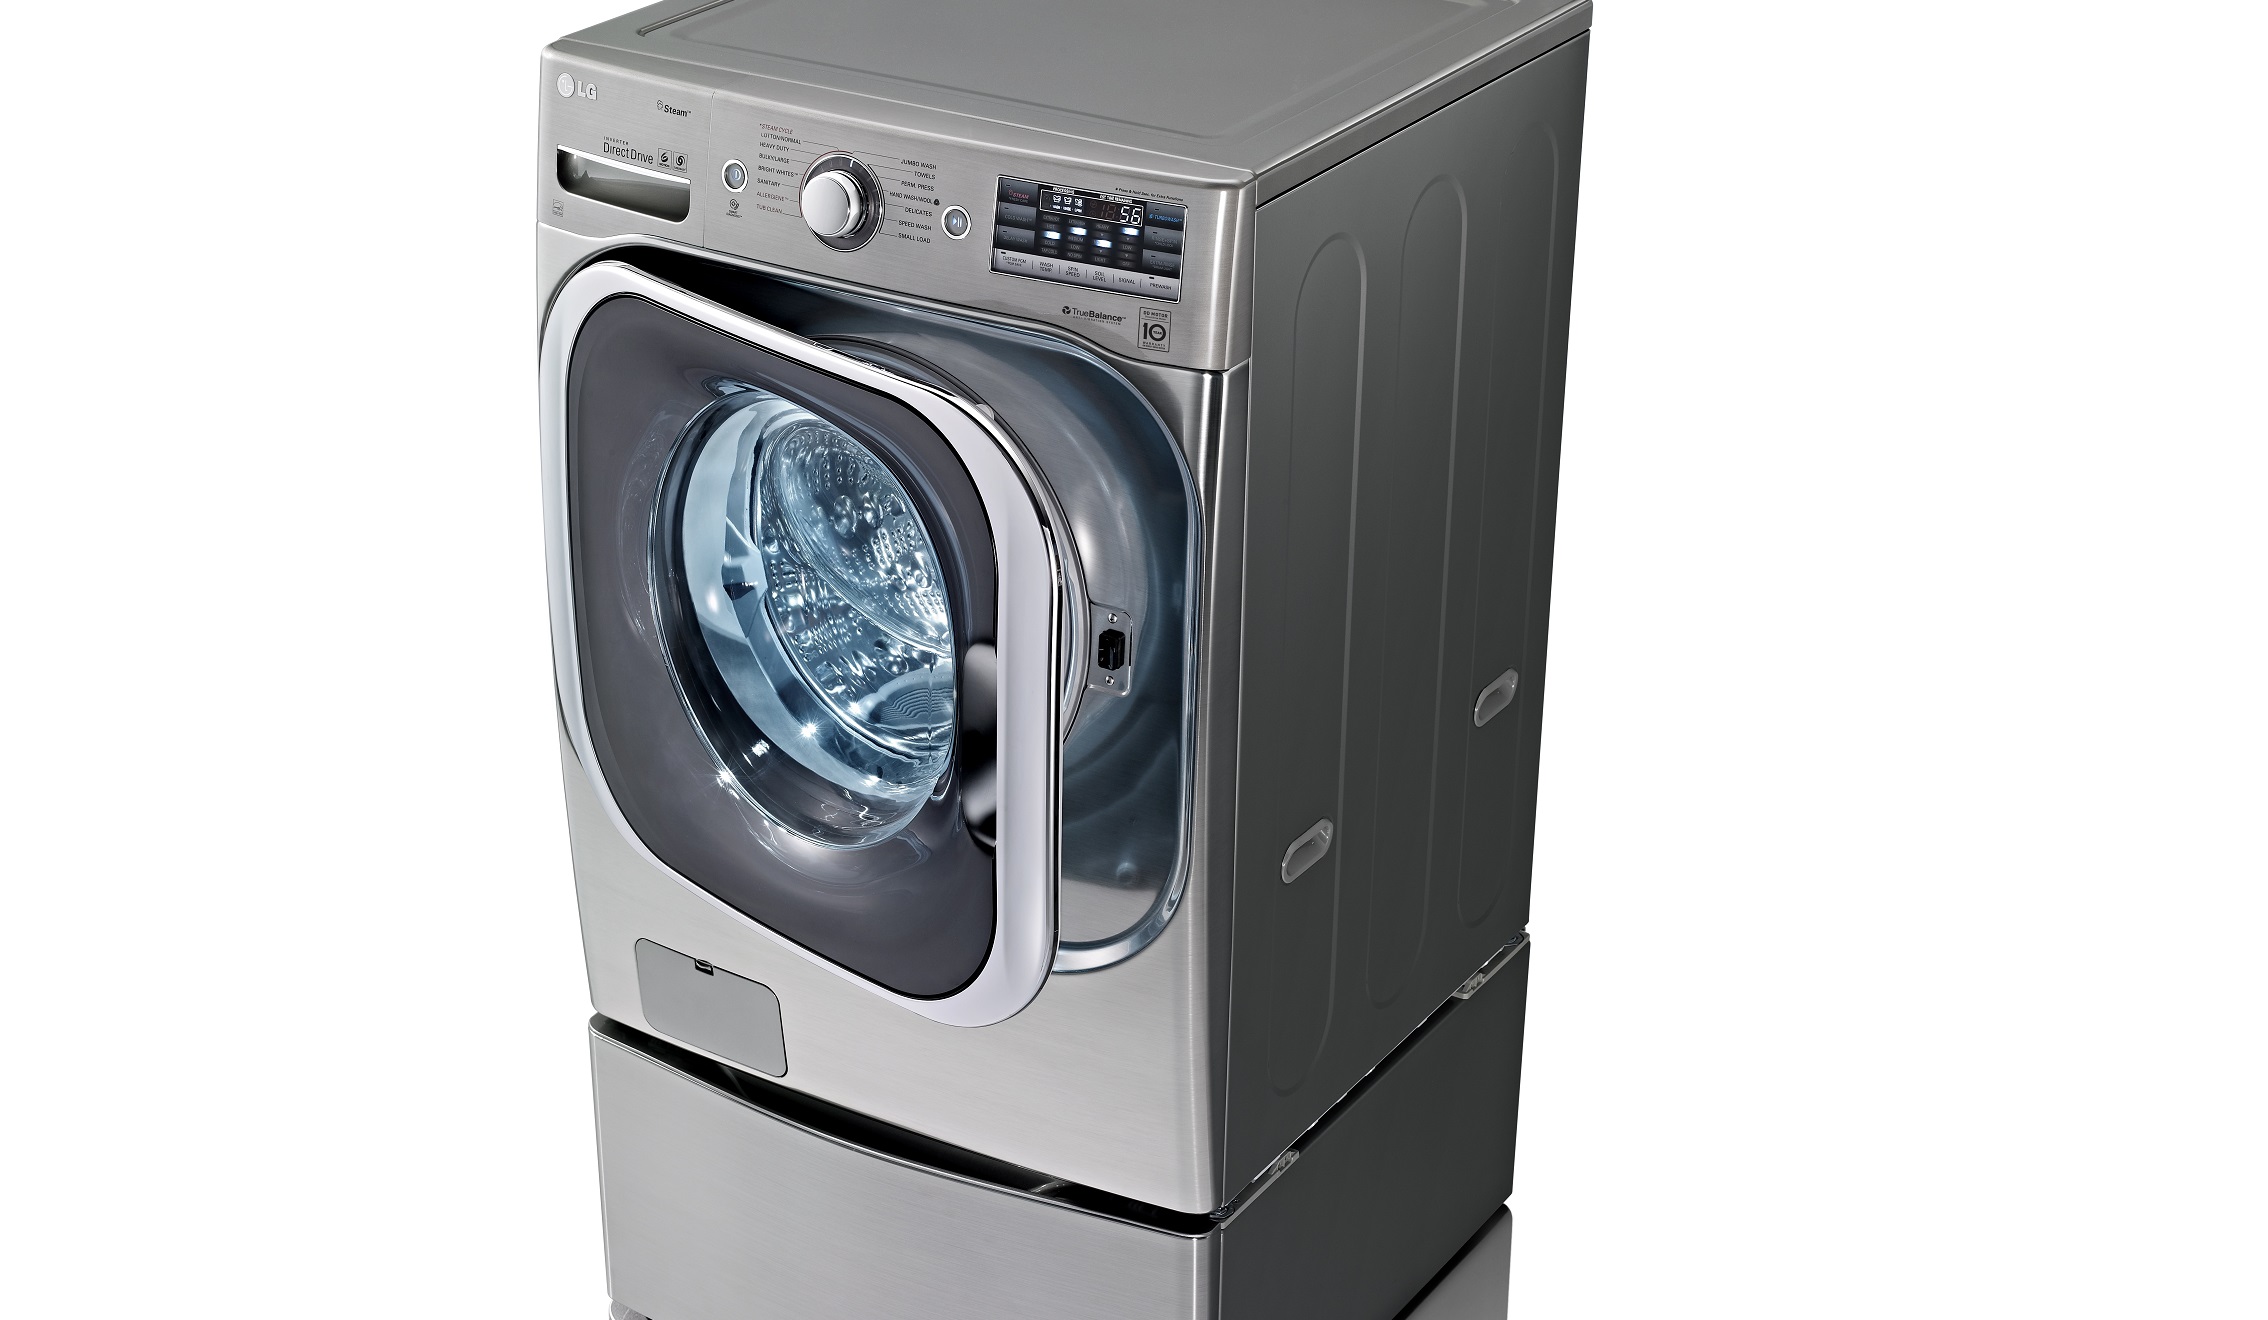 LG washing machine with square door